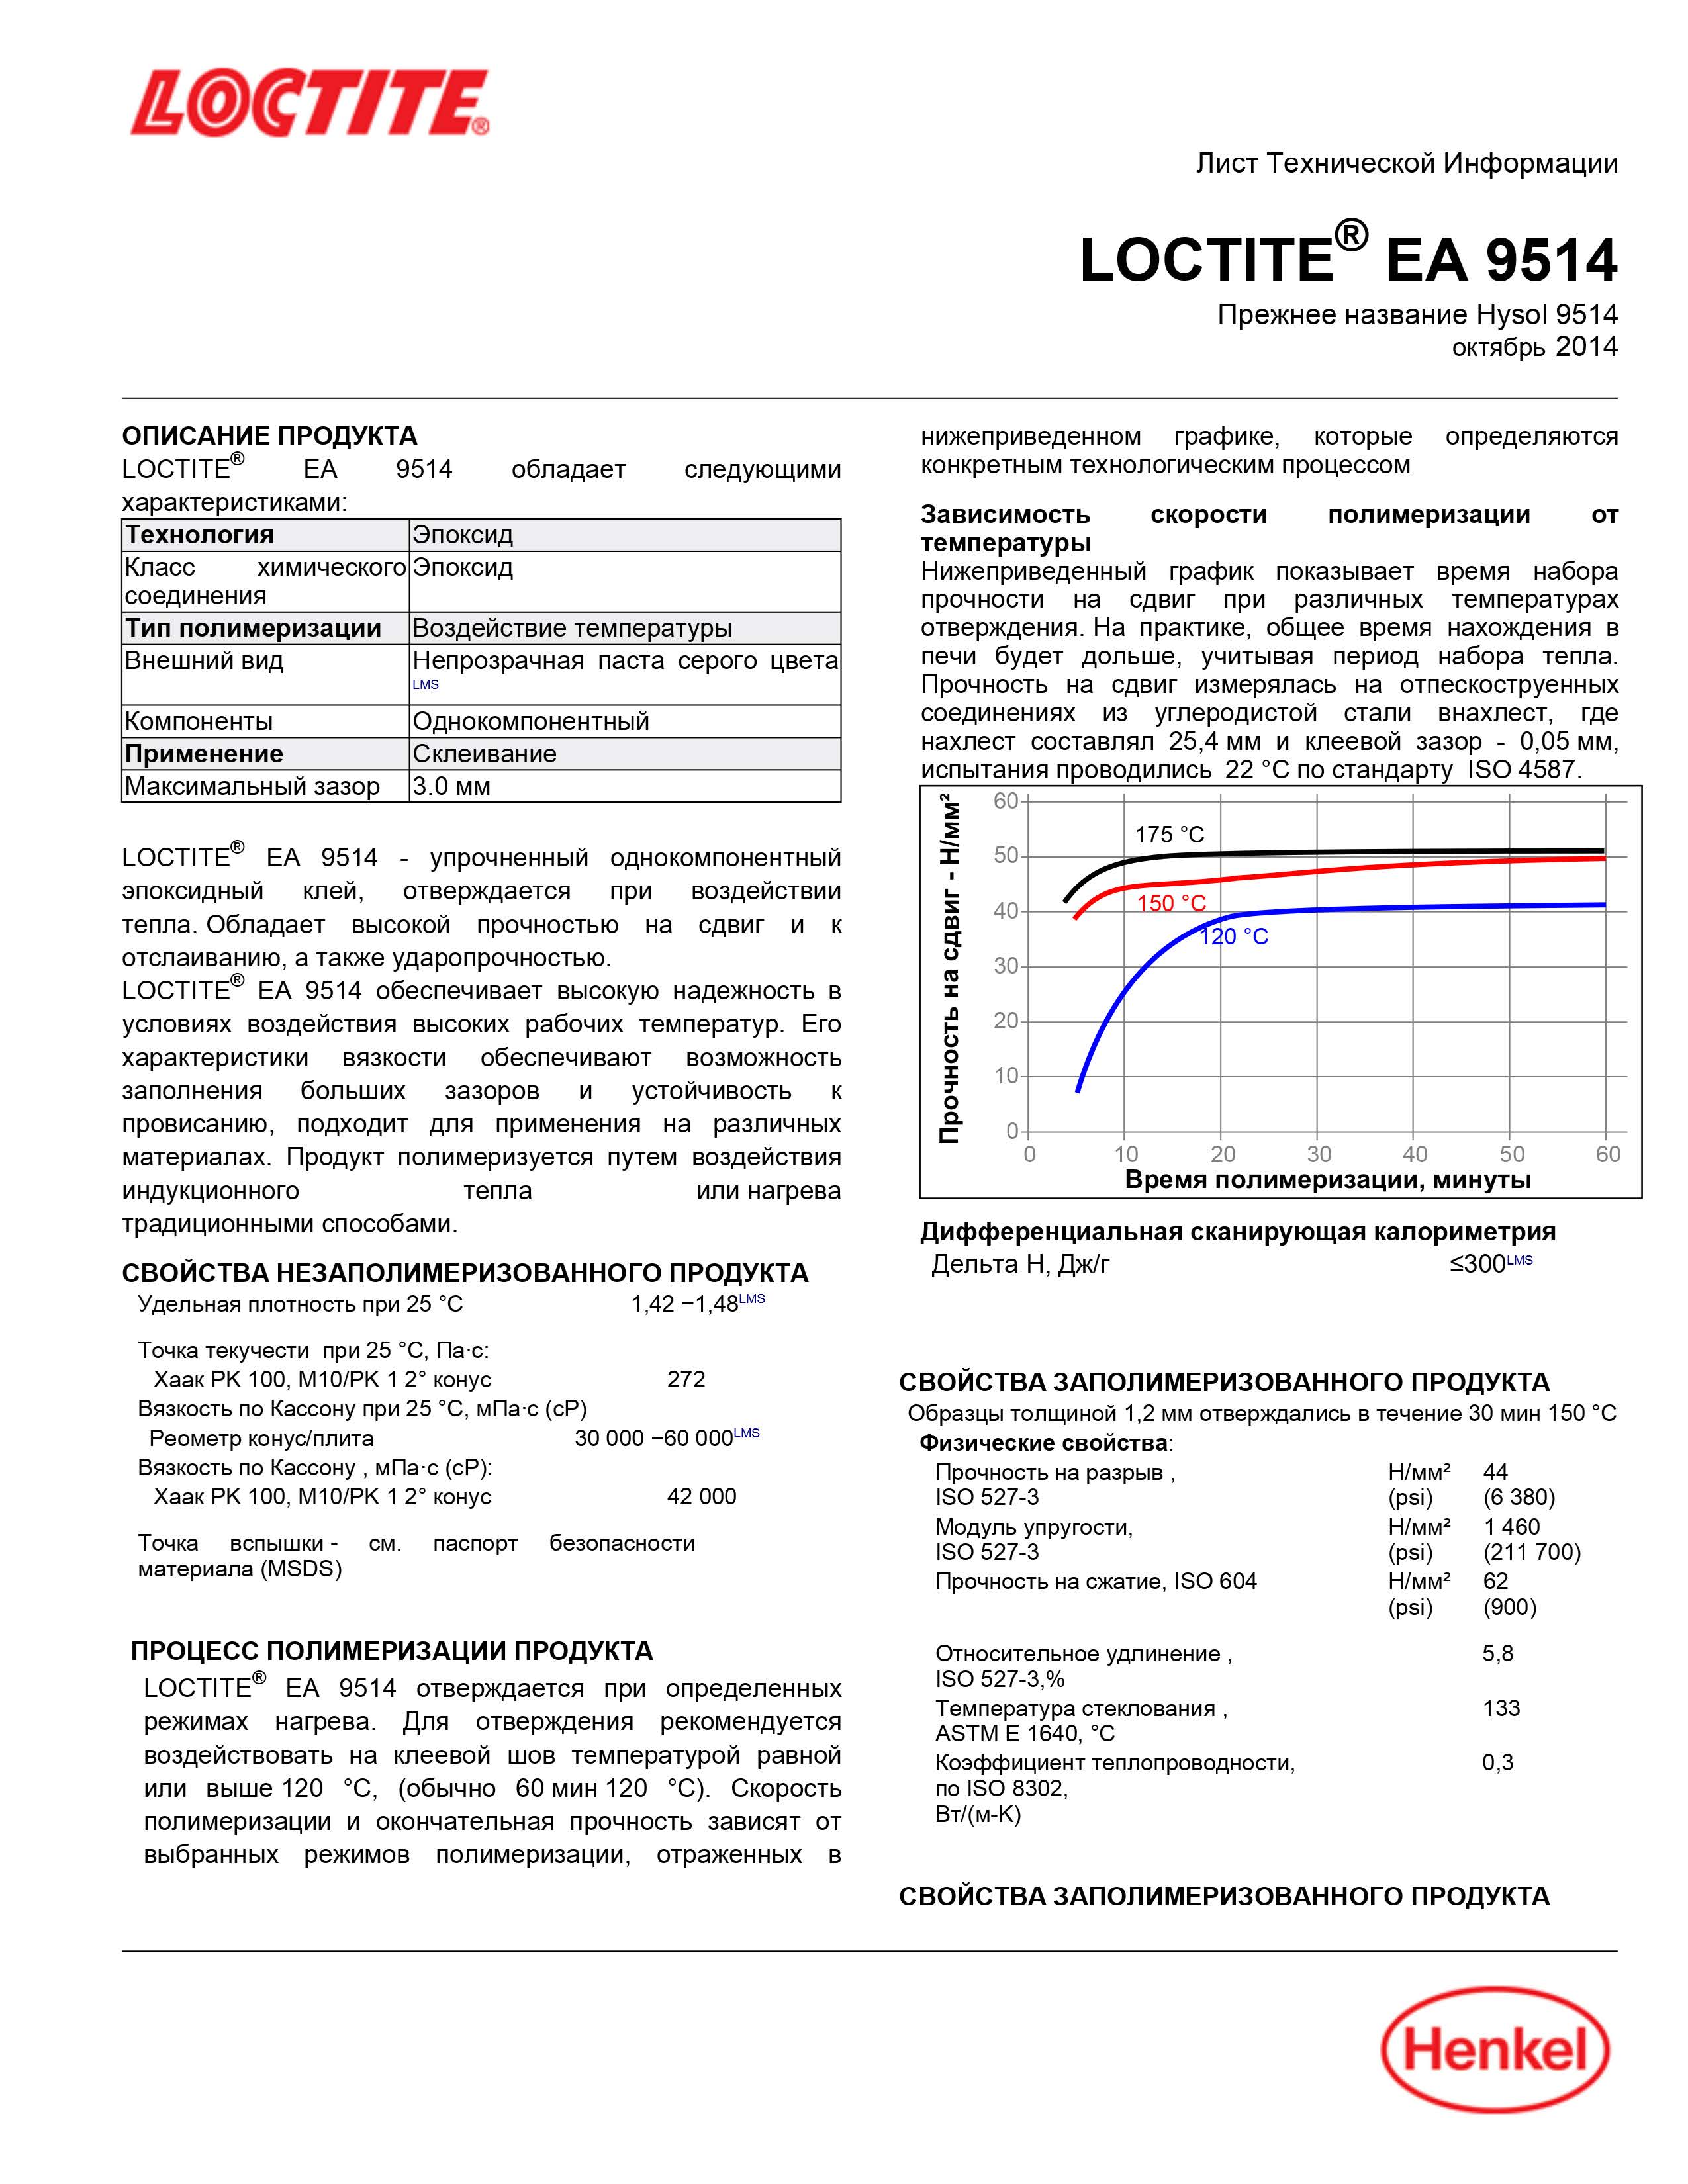 Упрочненный однокомпонентный эпоксидный клей Локтайт  Loctite EA 9514 CR, 300мл